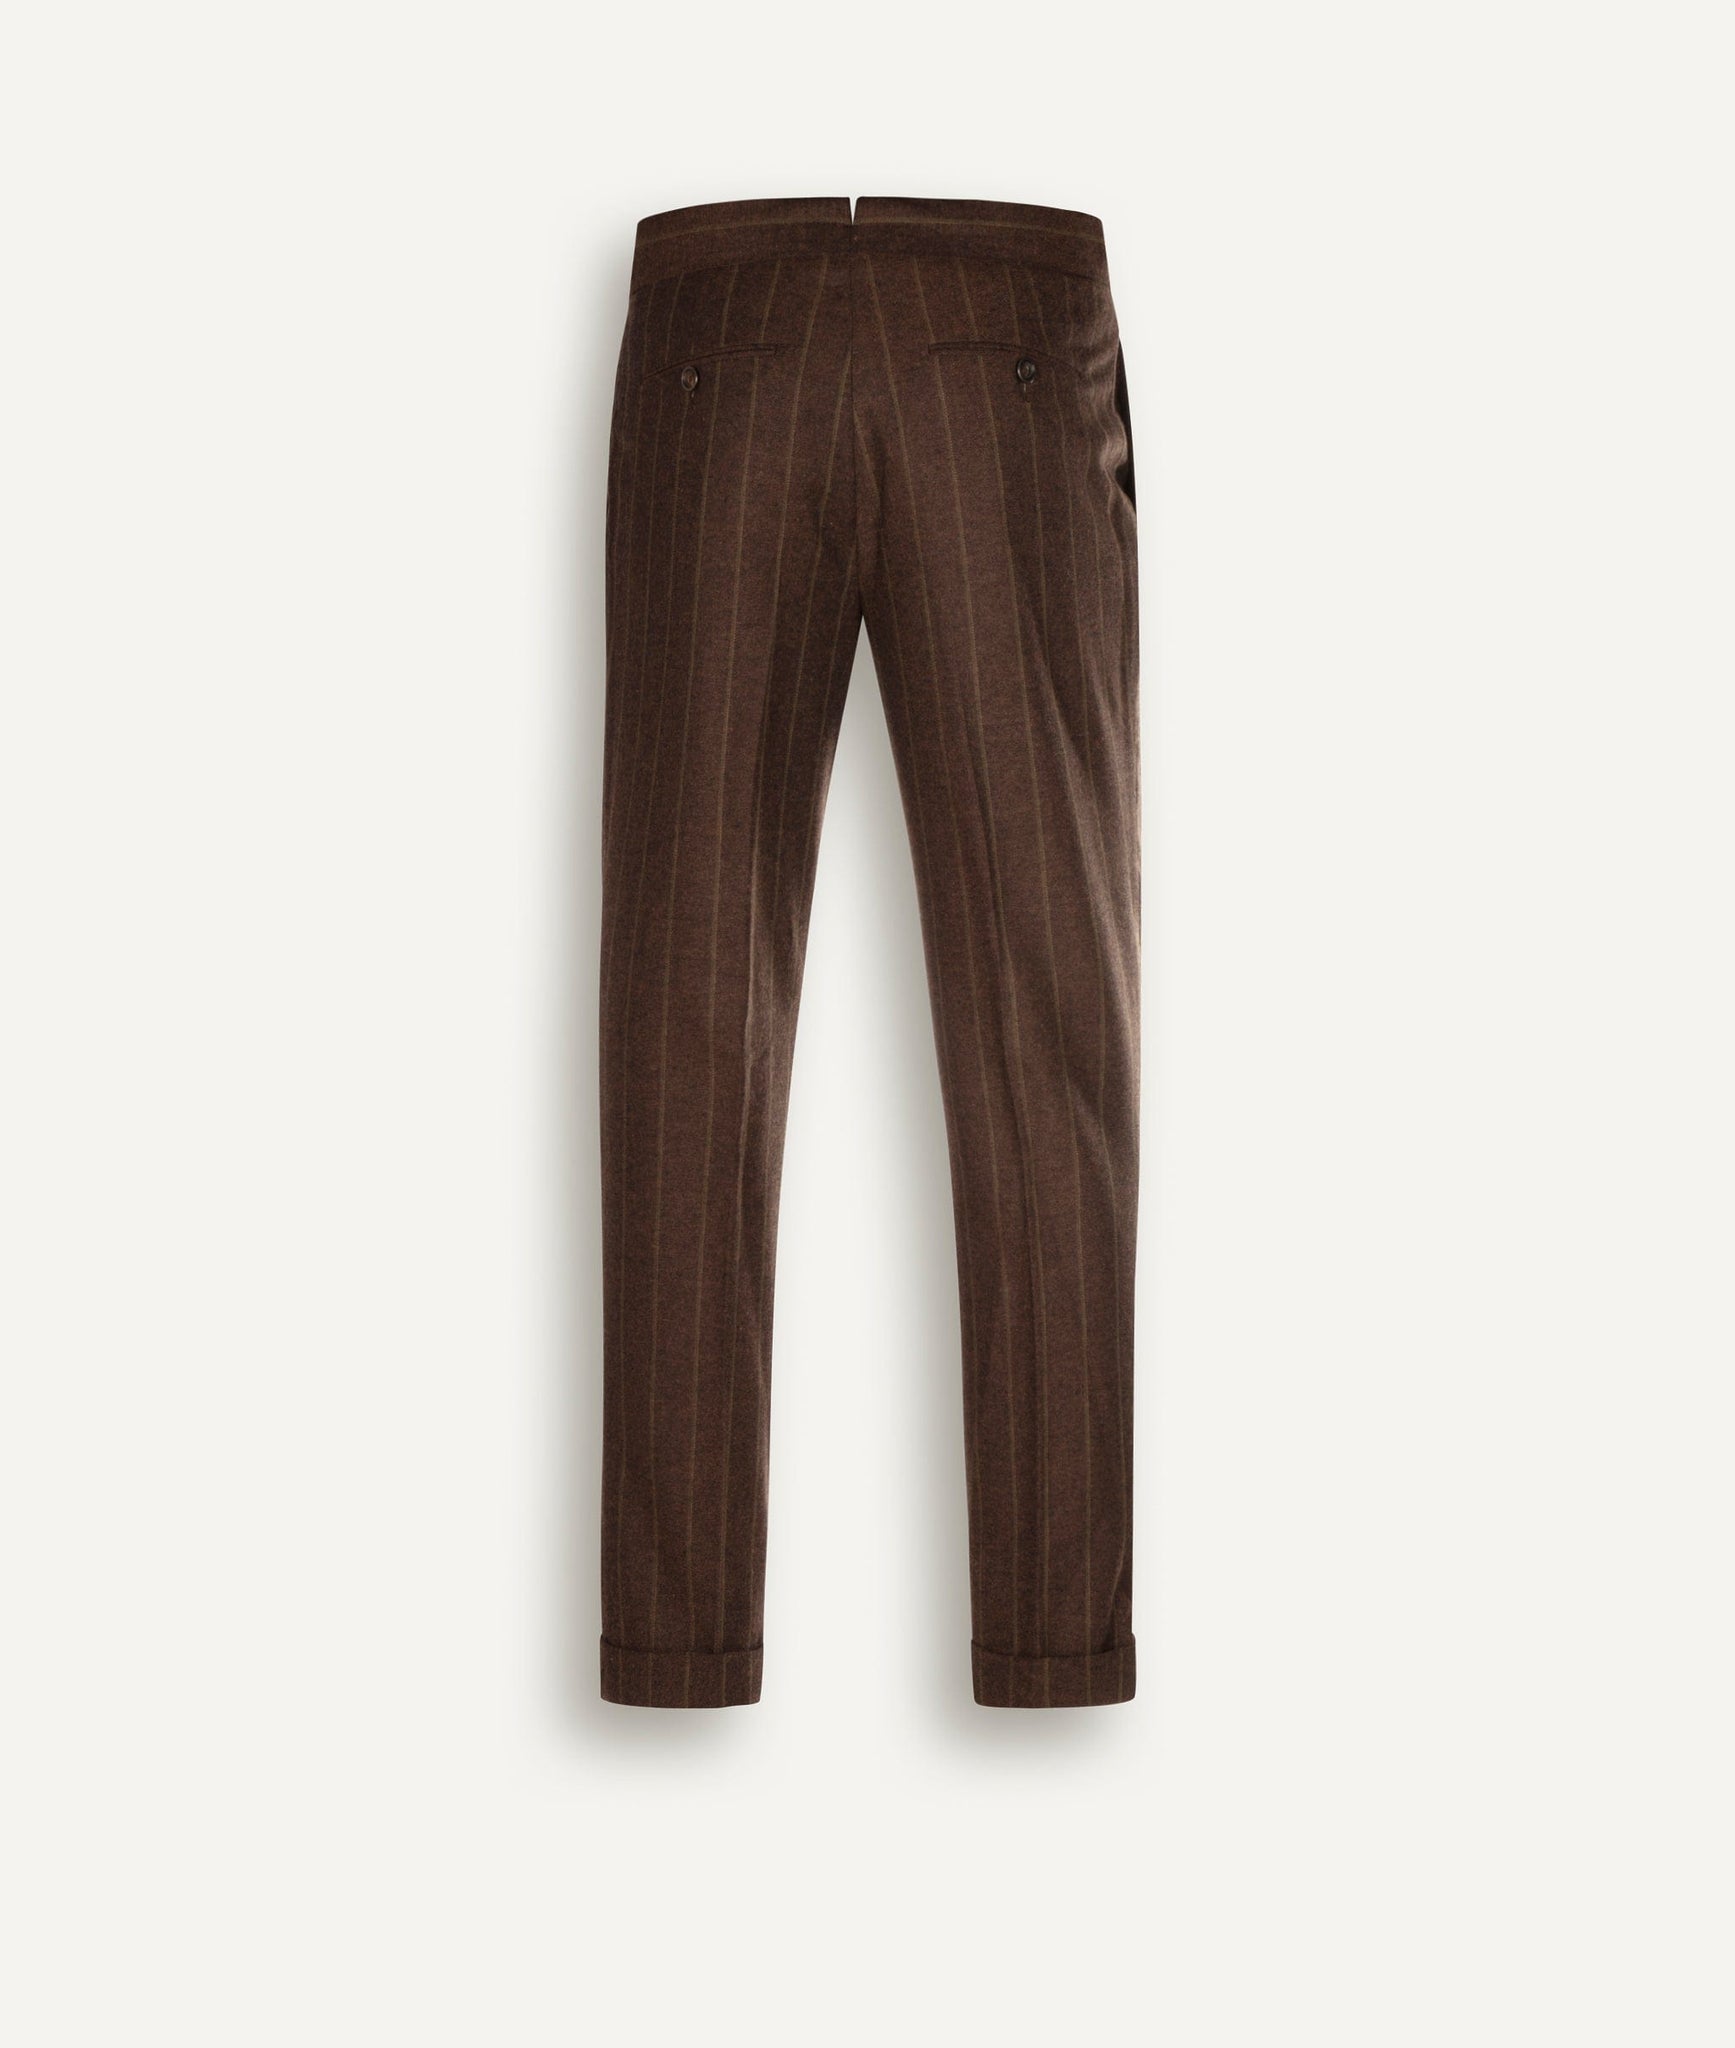 Lardini - Classic Trousers in Wool